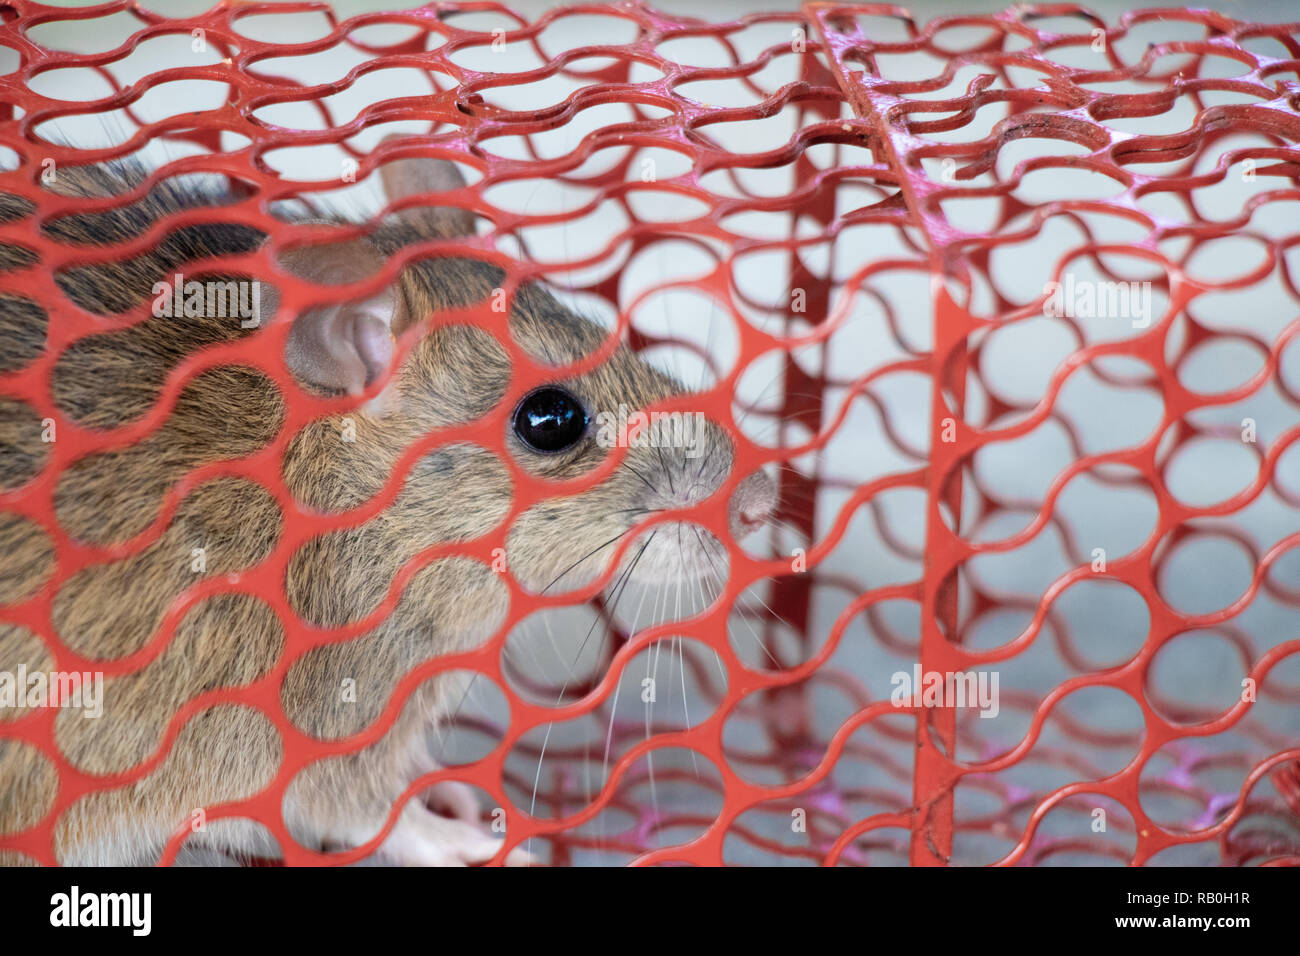 Maus oder Ratte in einem roten Käfig gefangen Stockfoto